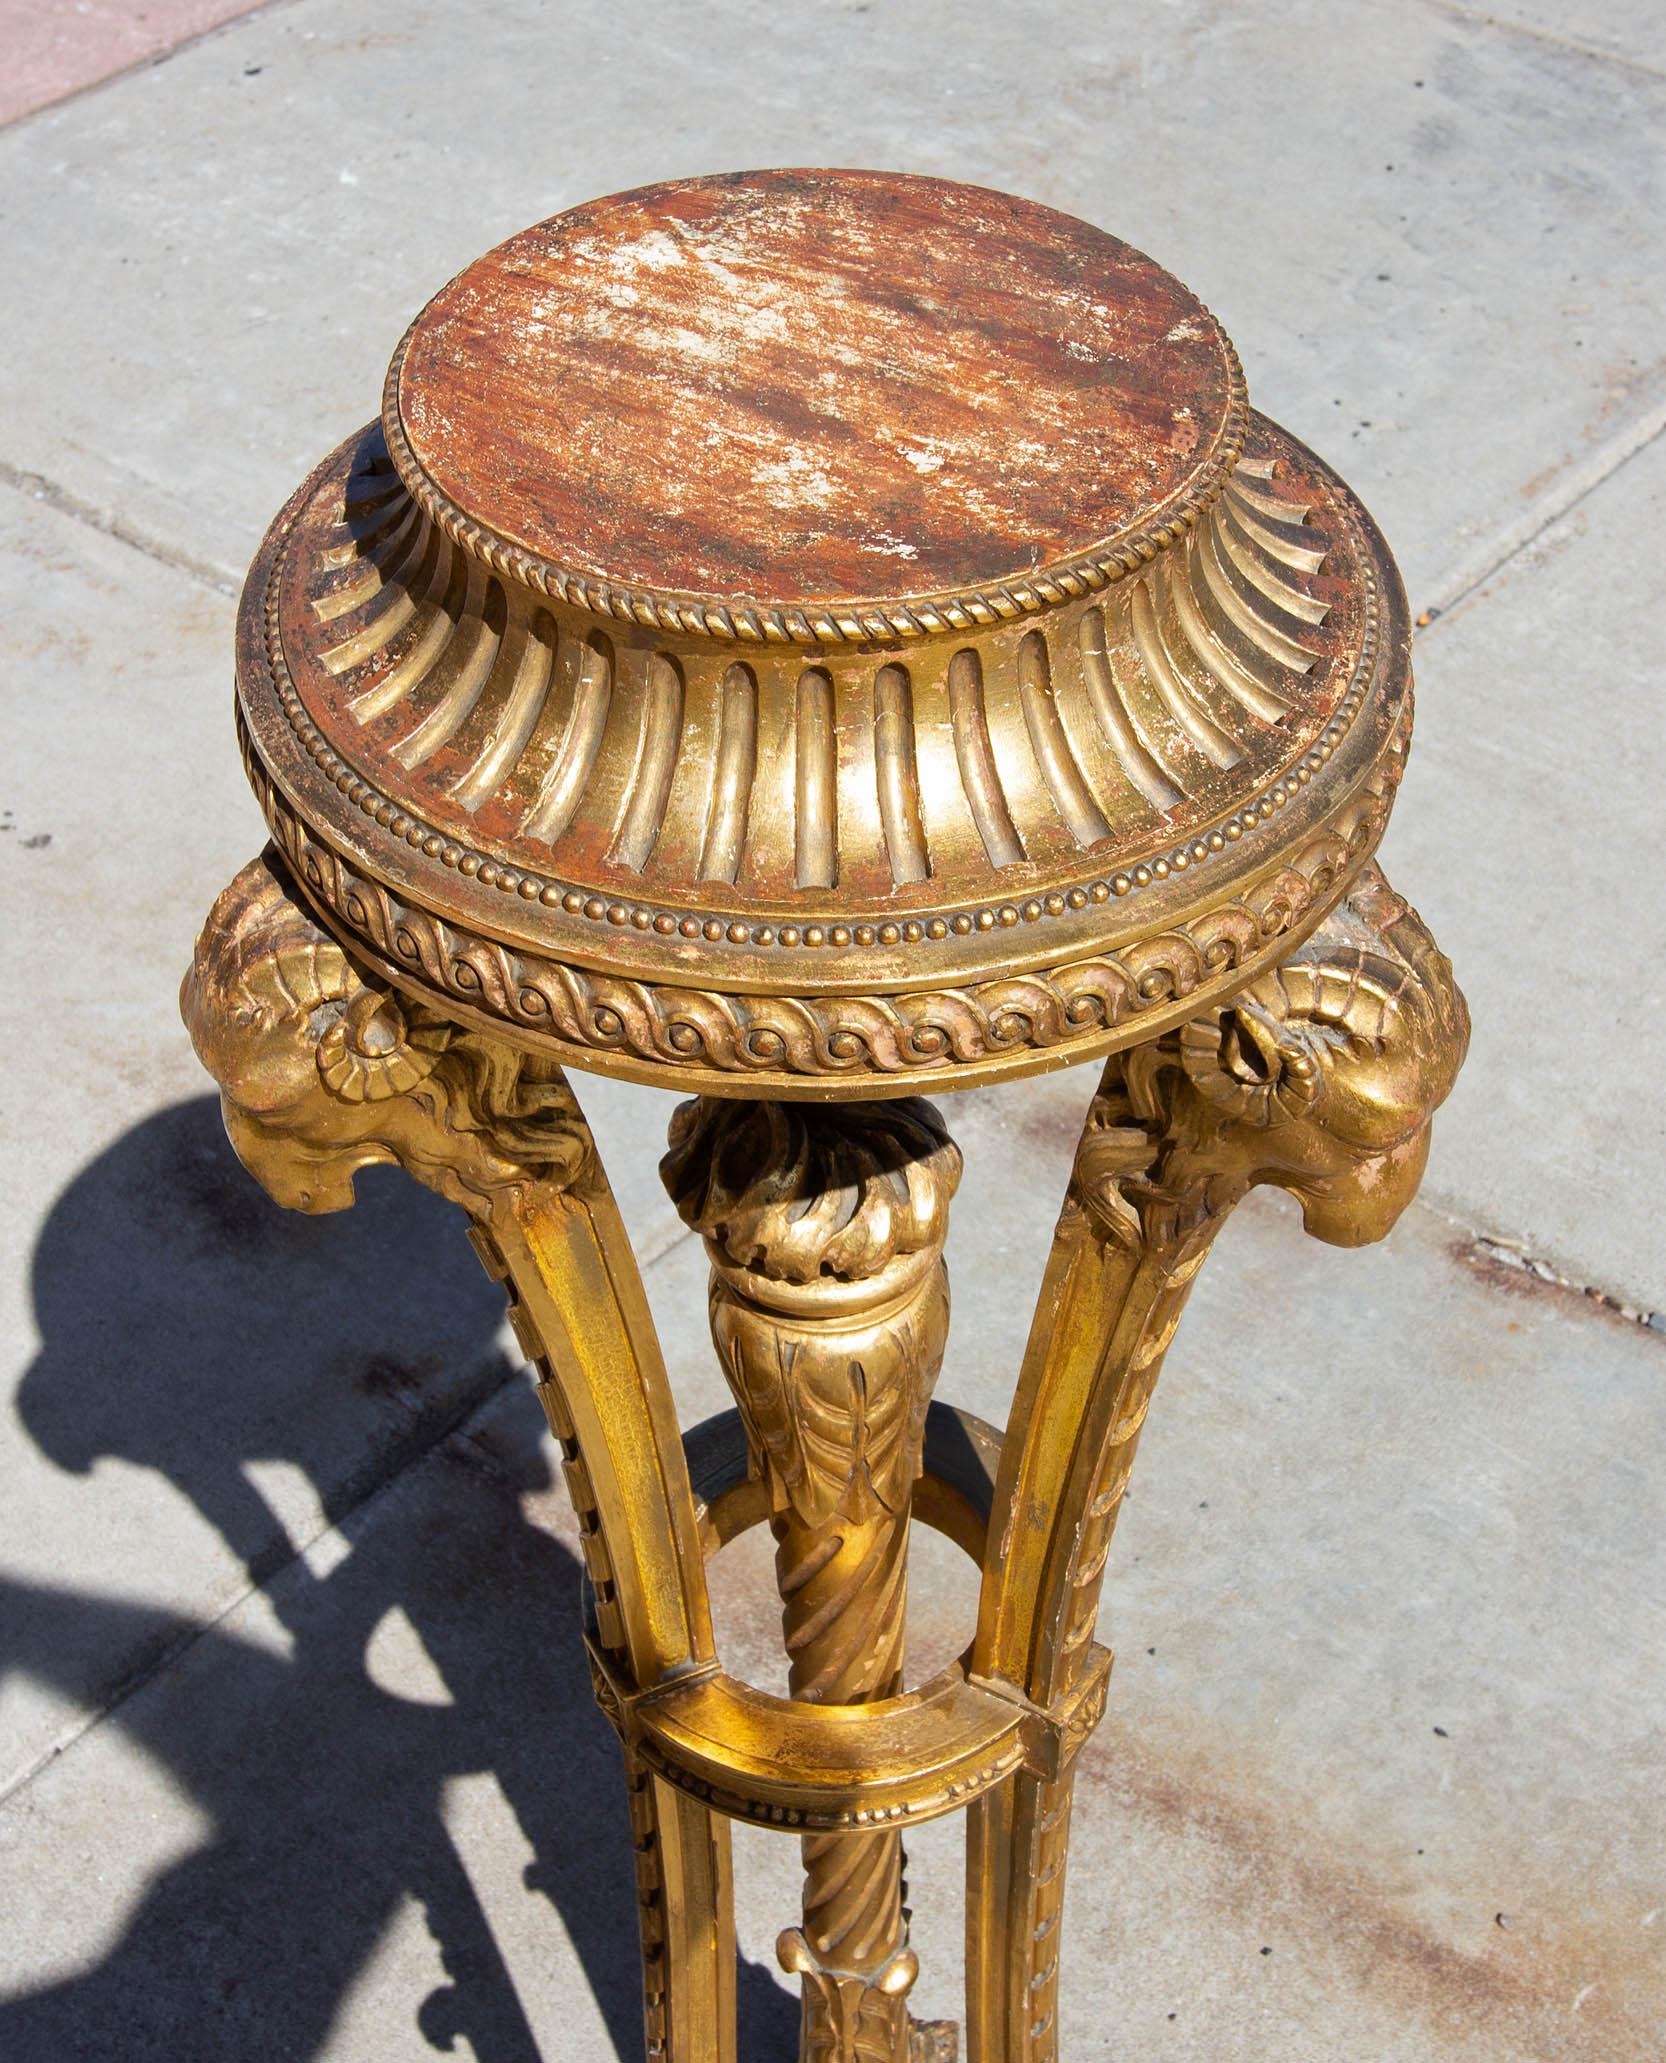 European Antique Regency Carved and Gilt Pedestal Stand